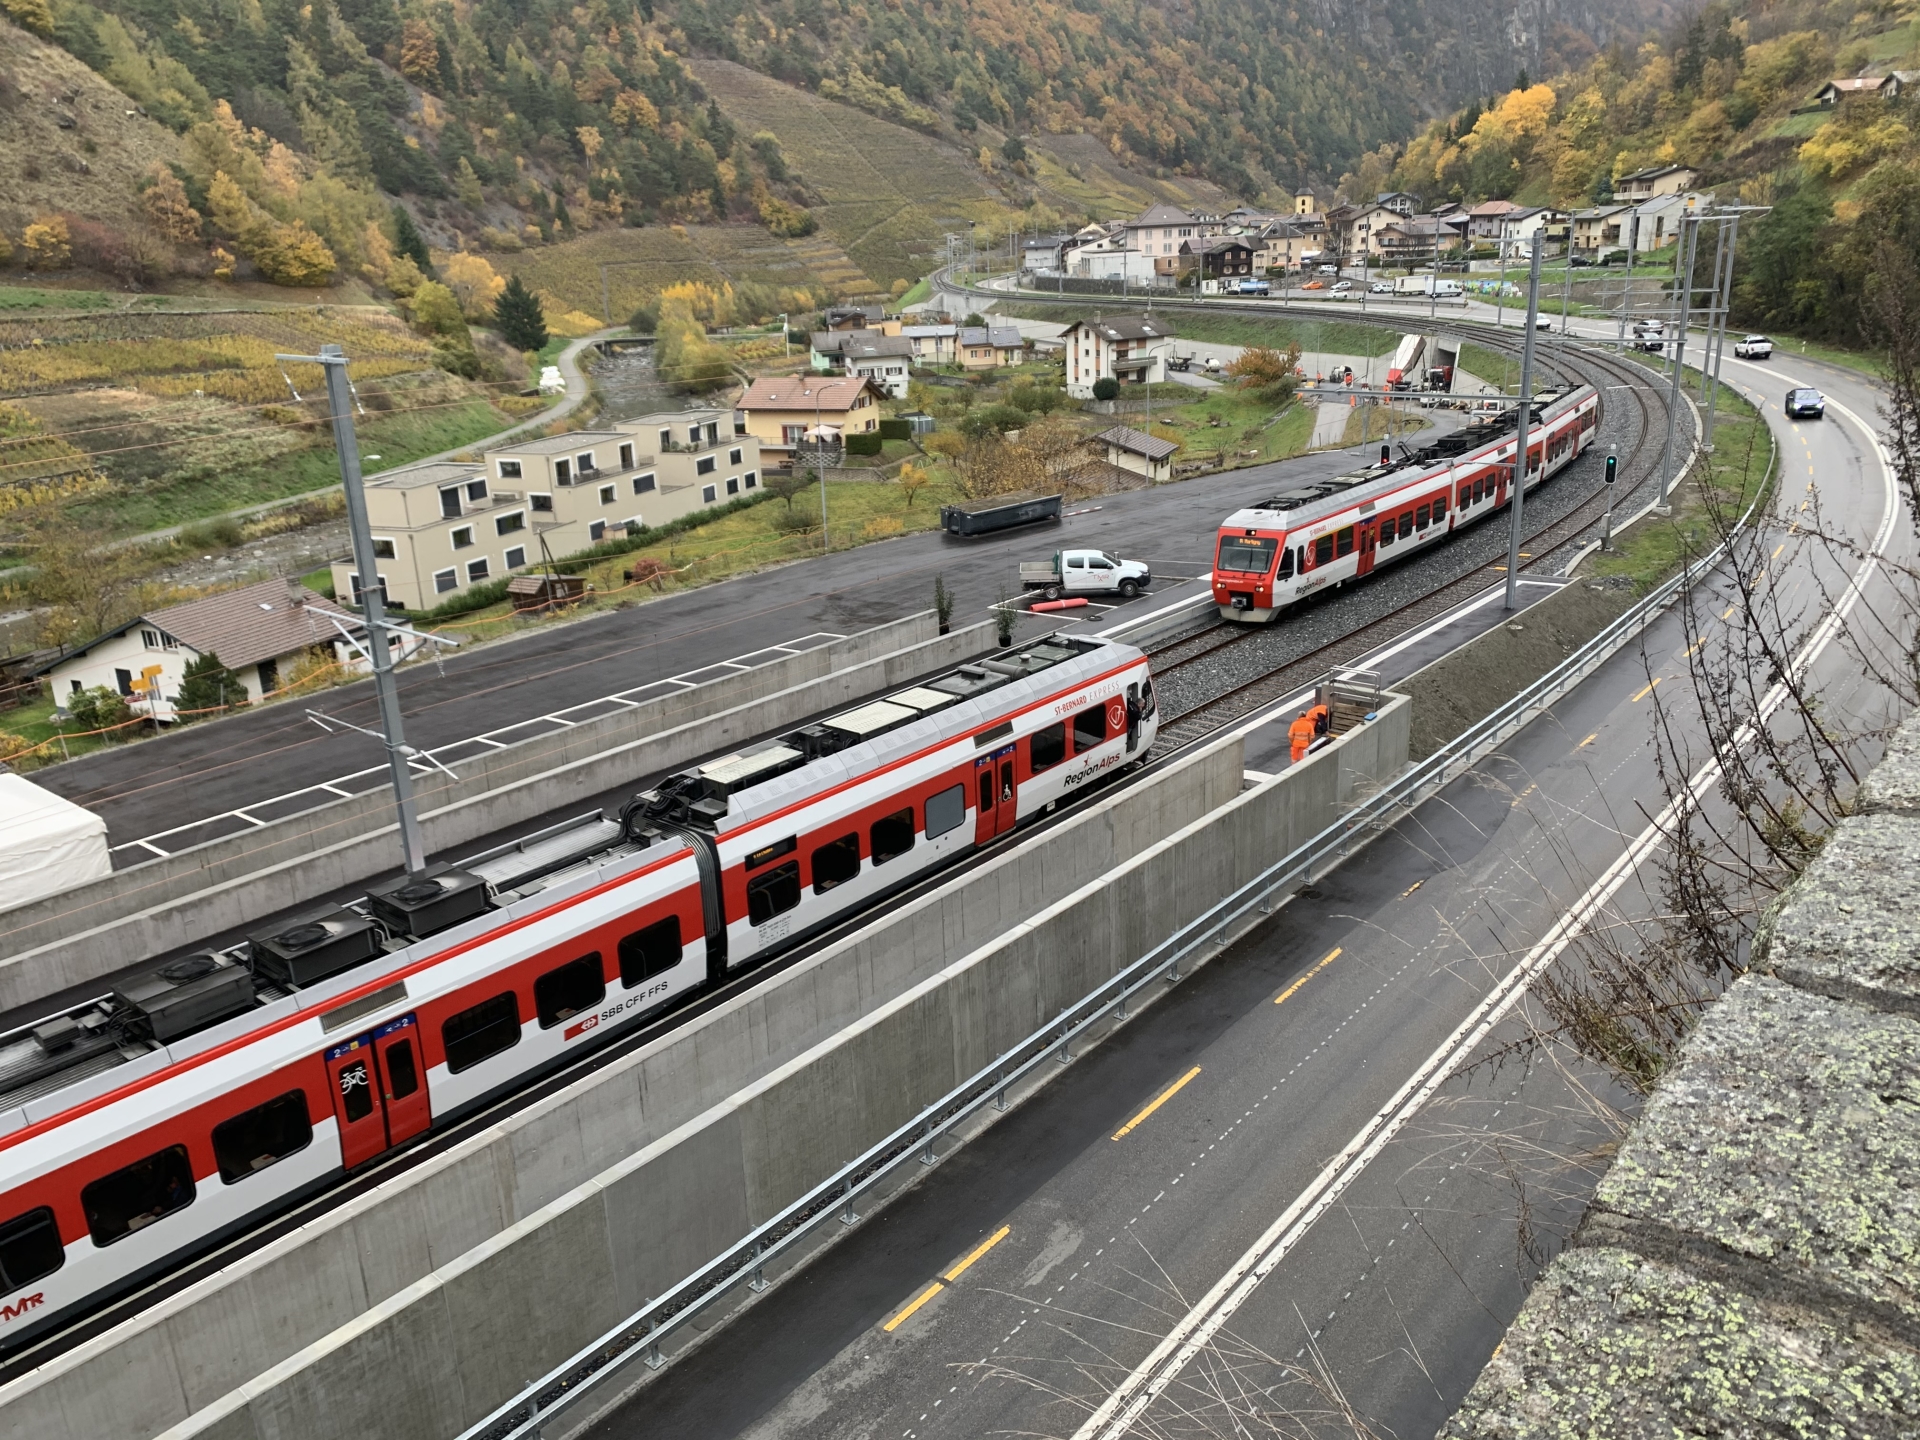 A la sortie de la gare de Bovernier, direction Sembrancher, une double voie a été construite sur une longueur de 900 mètres afin de permettre des croisements dynamiques entre les trains.